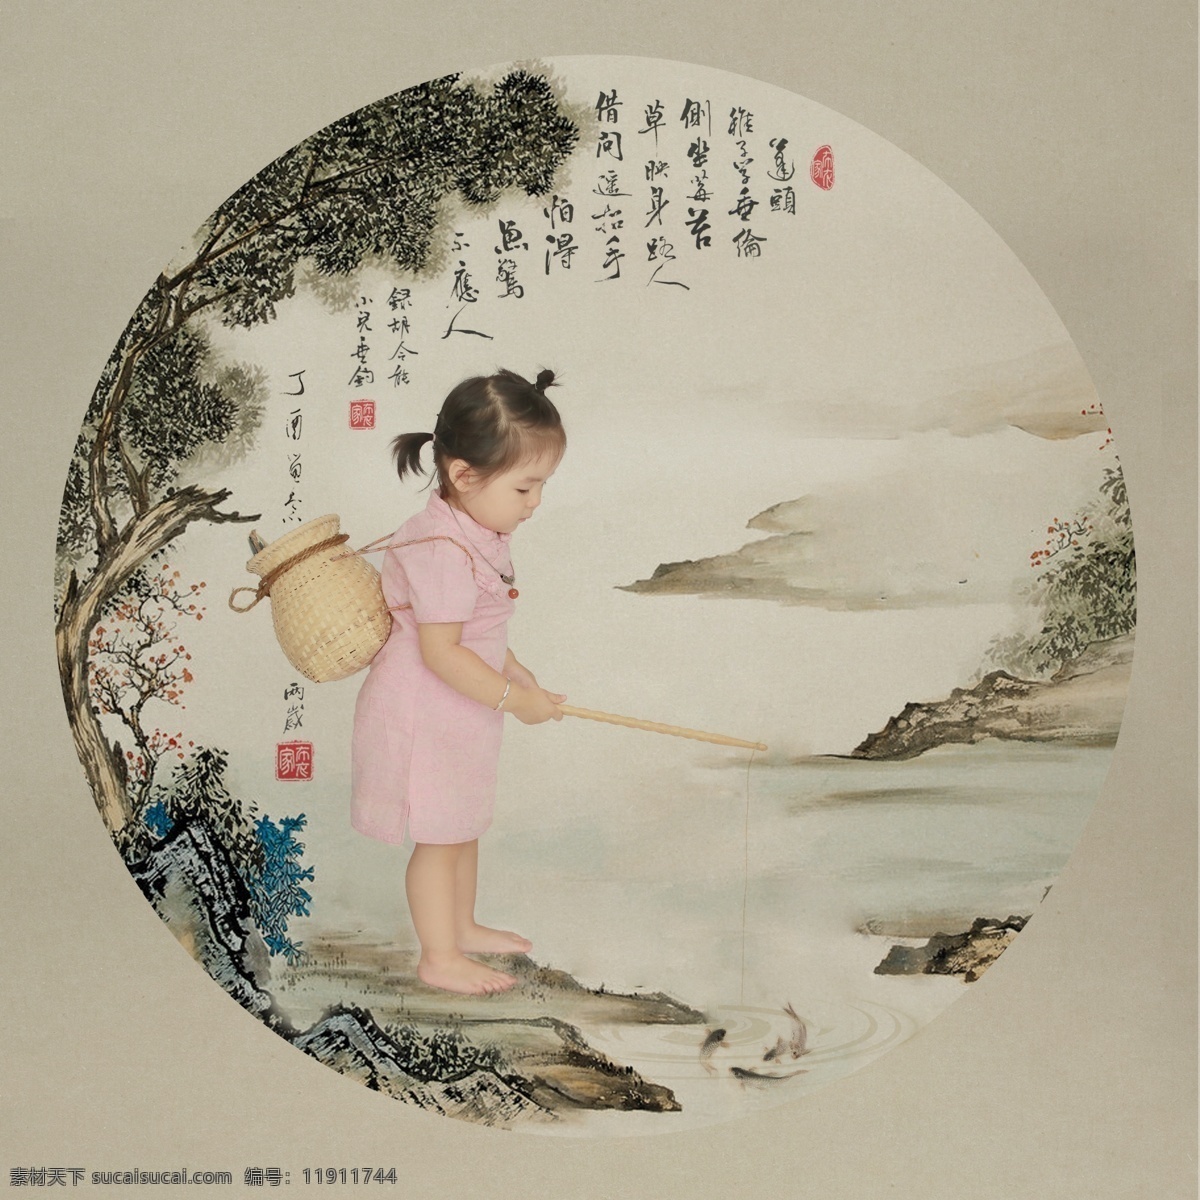 古风 儿童素材 工笔画 垂钓鱼 山 水 树木 字 印章 文化艺术 传统文化